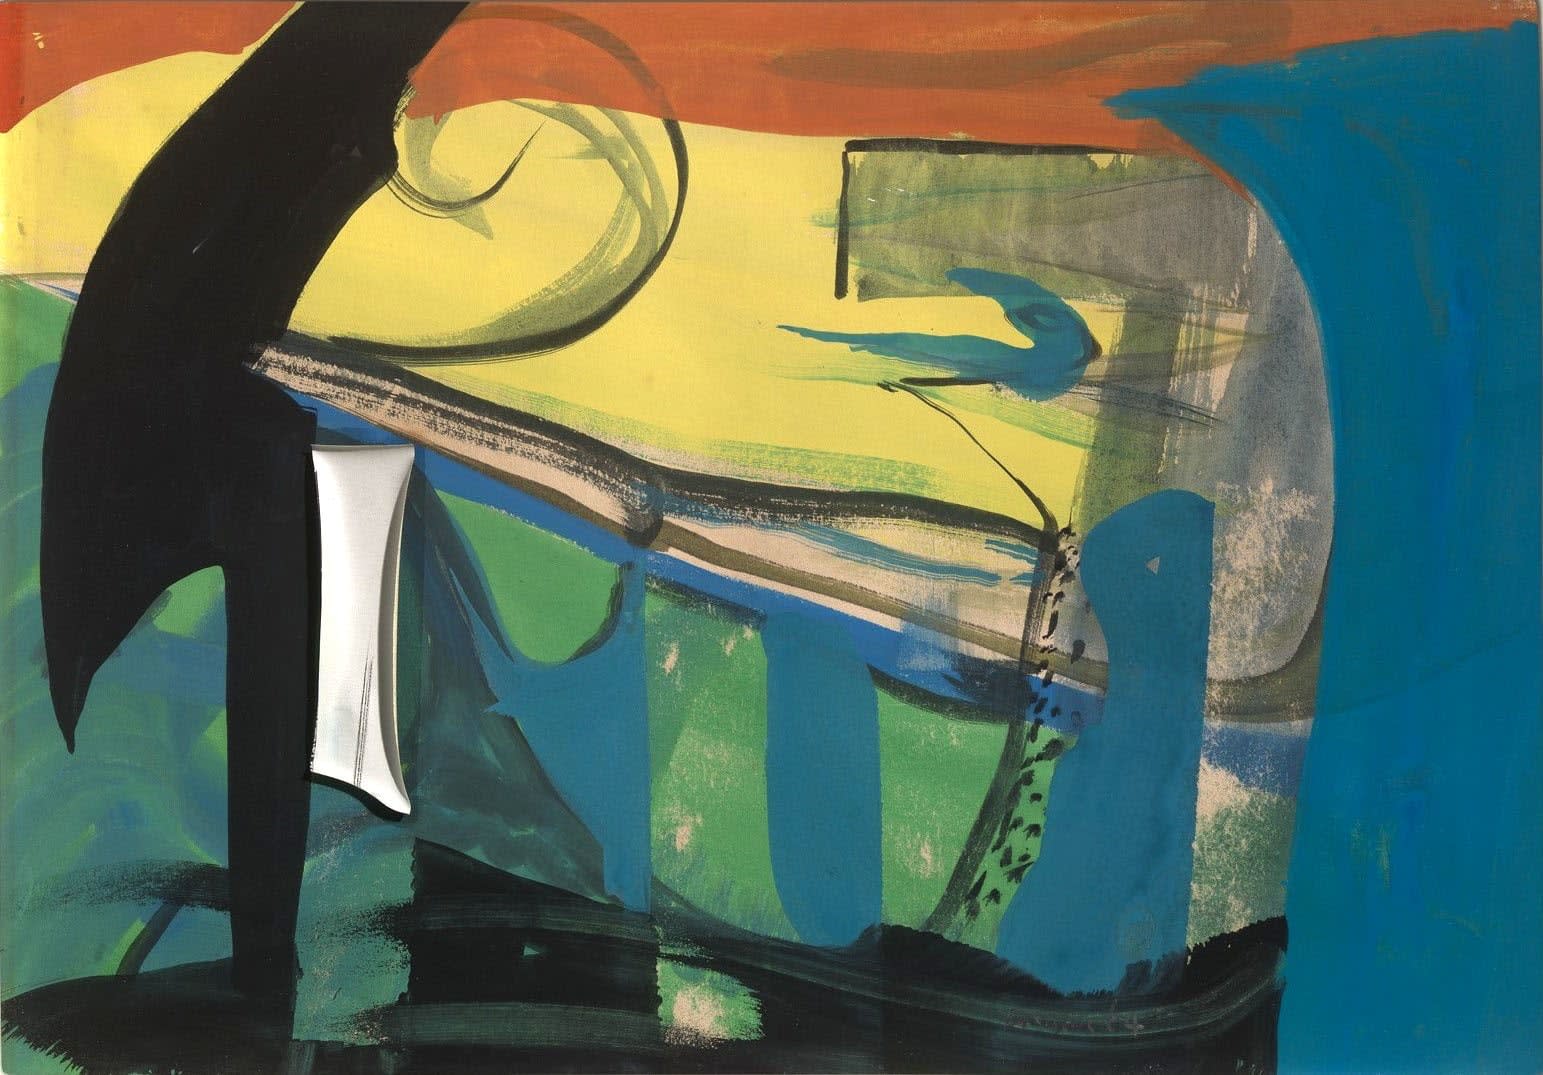 Peter Lanyon, Prague, 1964